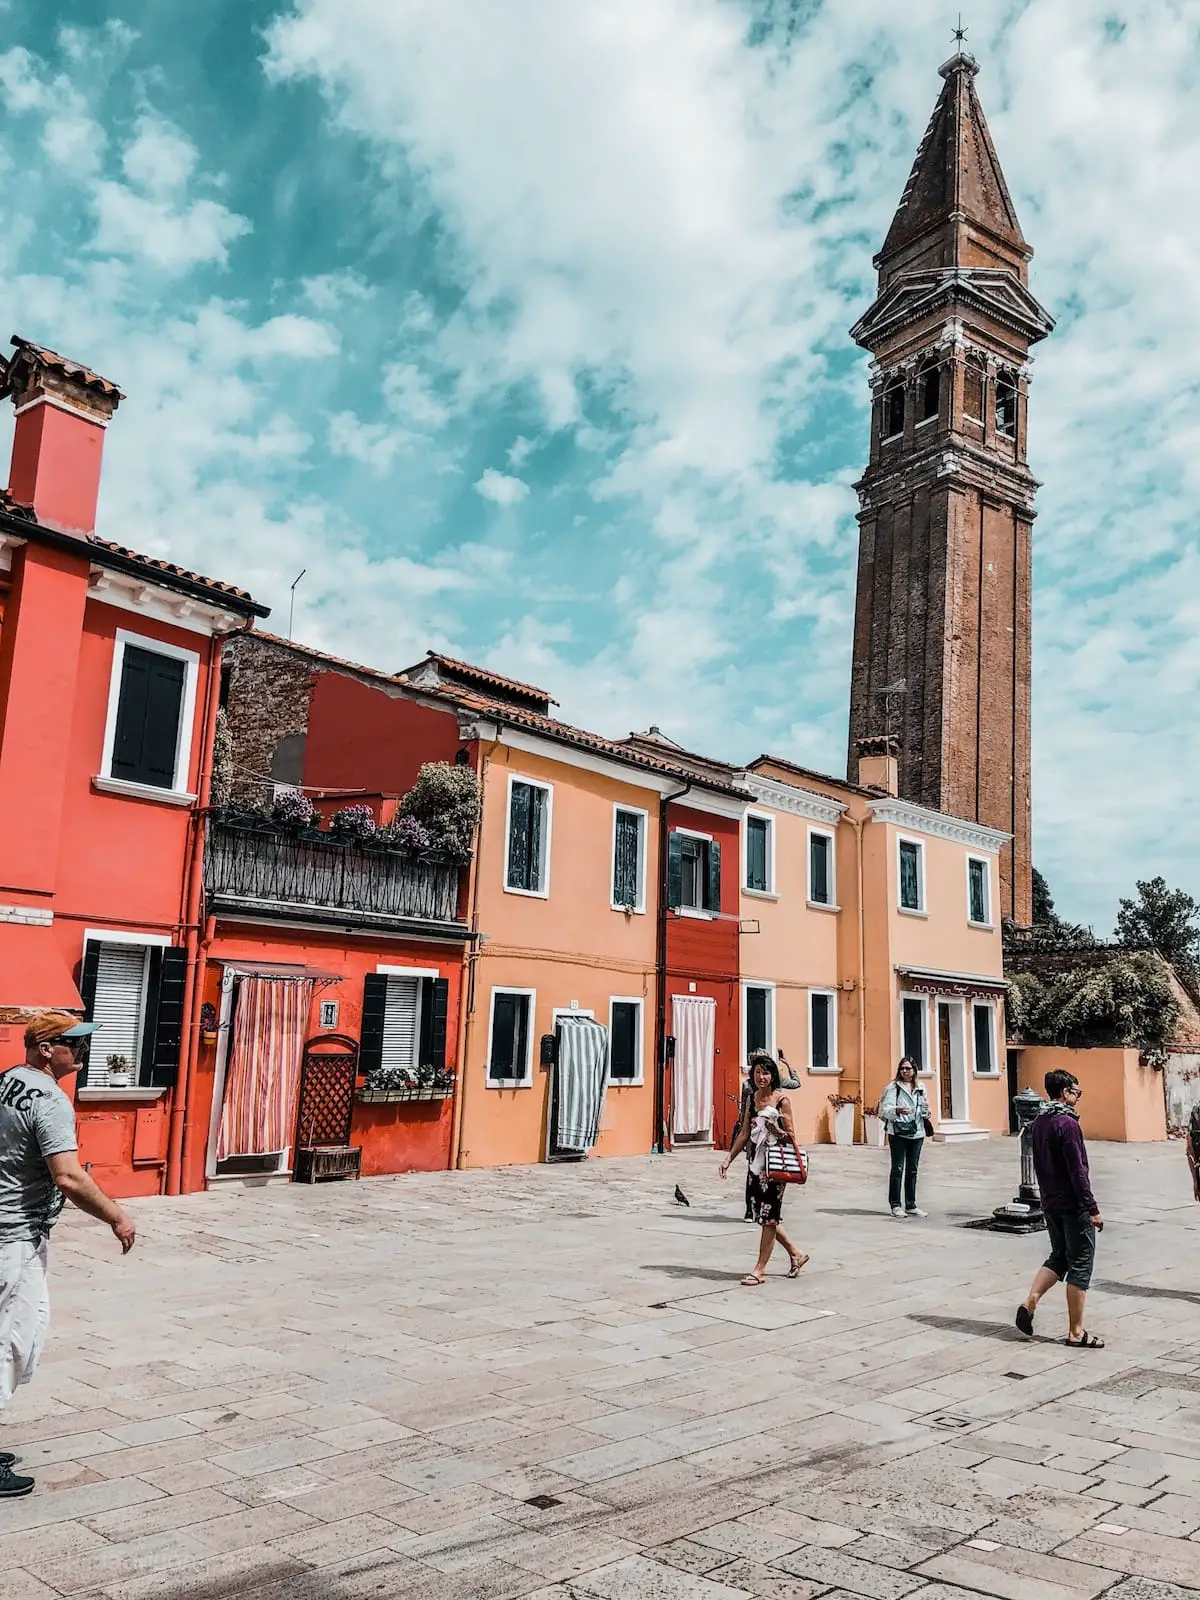 Burano,Venedig Sehenswürdigkeiten, Städtereise nach Venedig Städtetrip, Kanäle und Brücken in Venedig, Gondeln, Urlaub in Italien